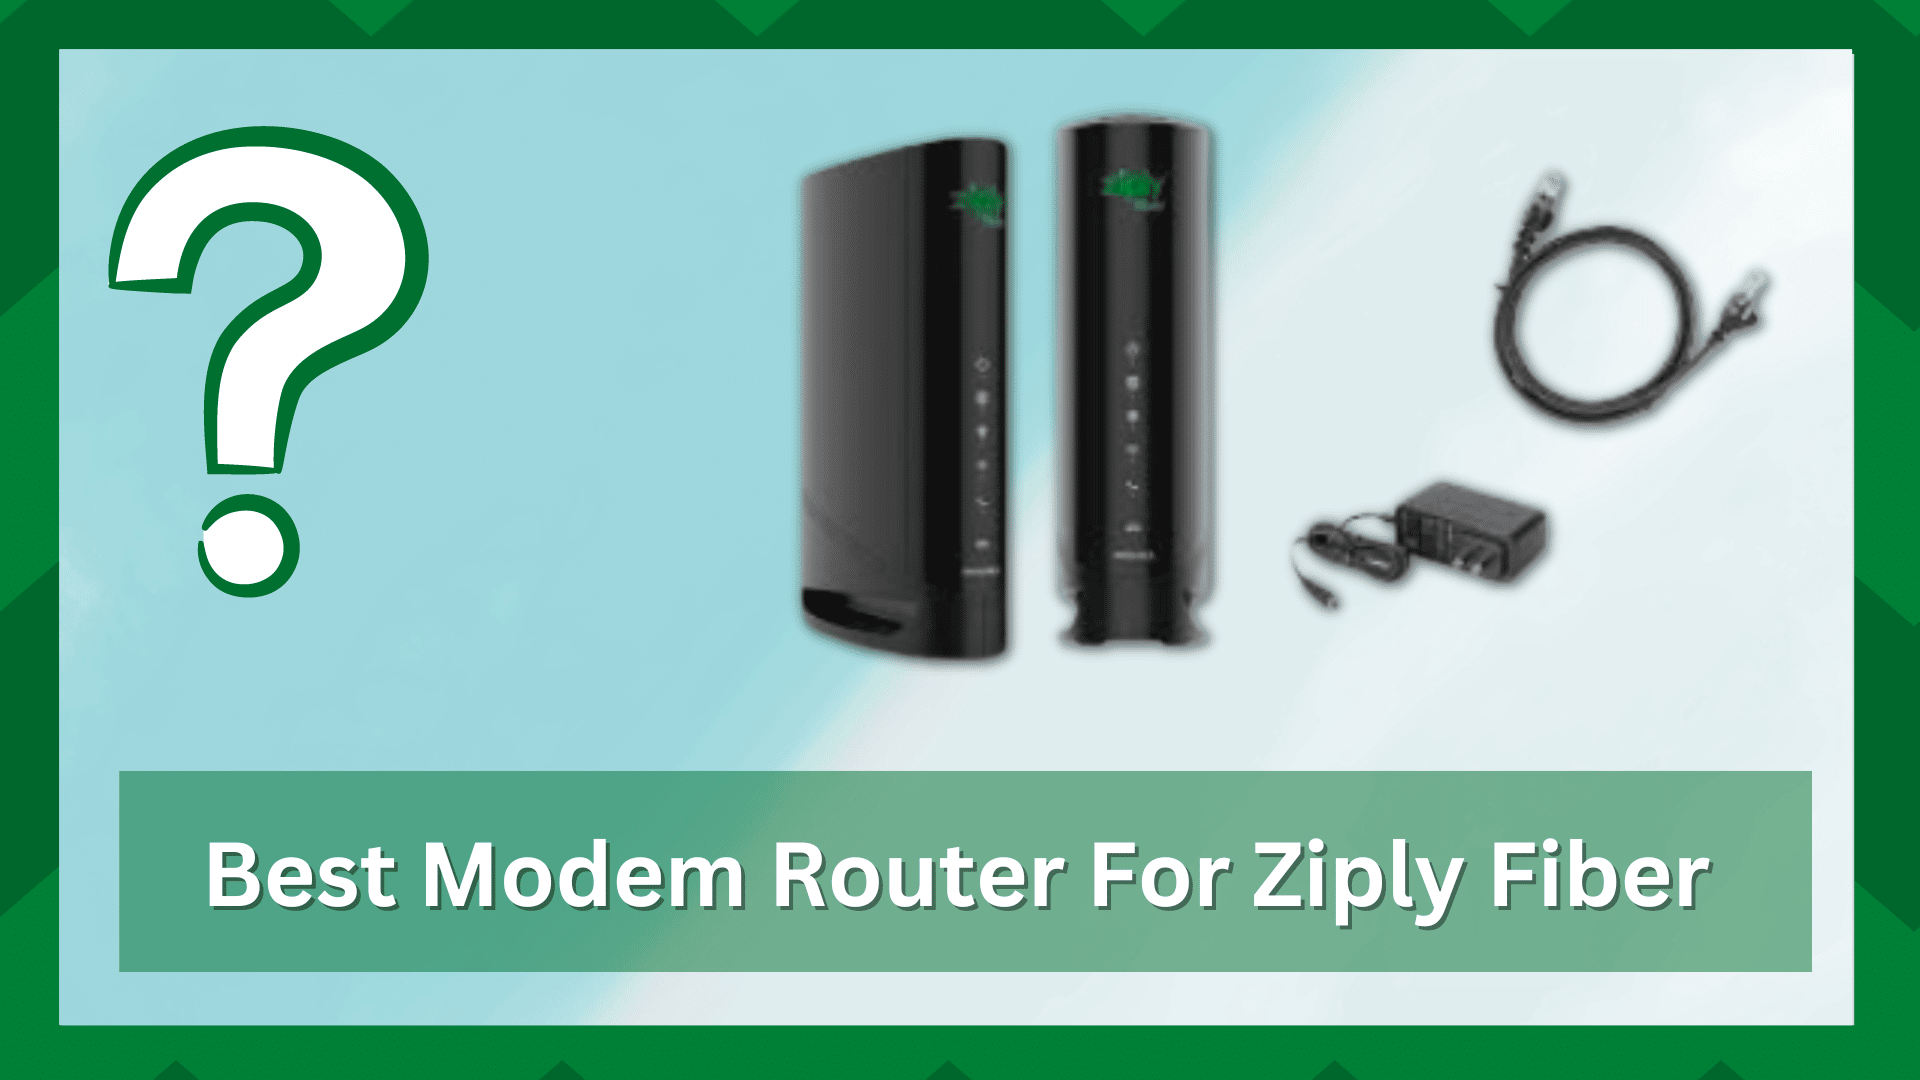 Best Modem Router For Ziply Fiber